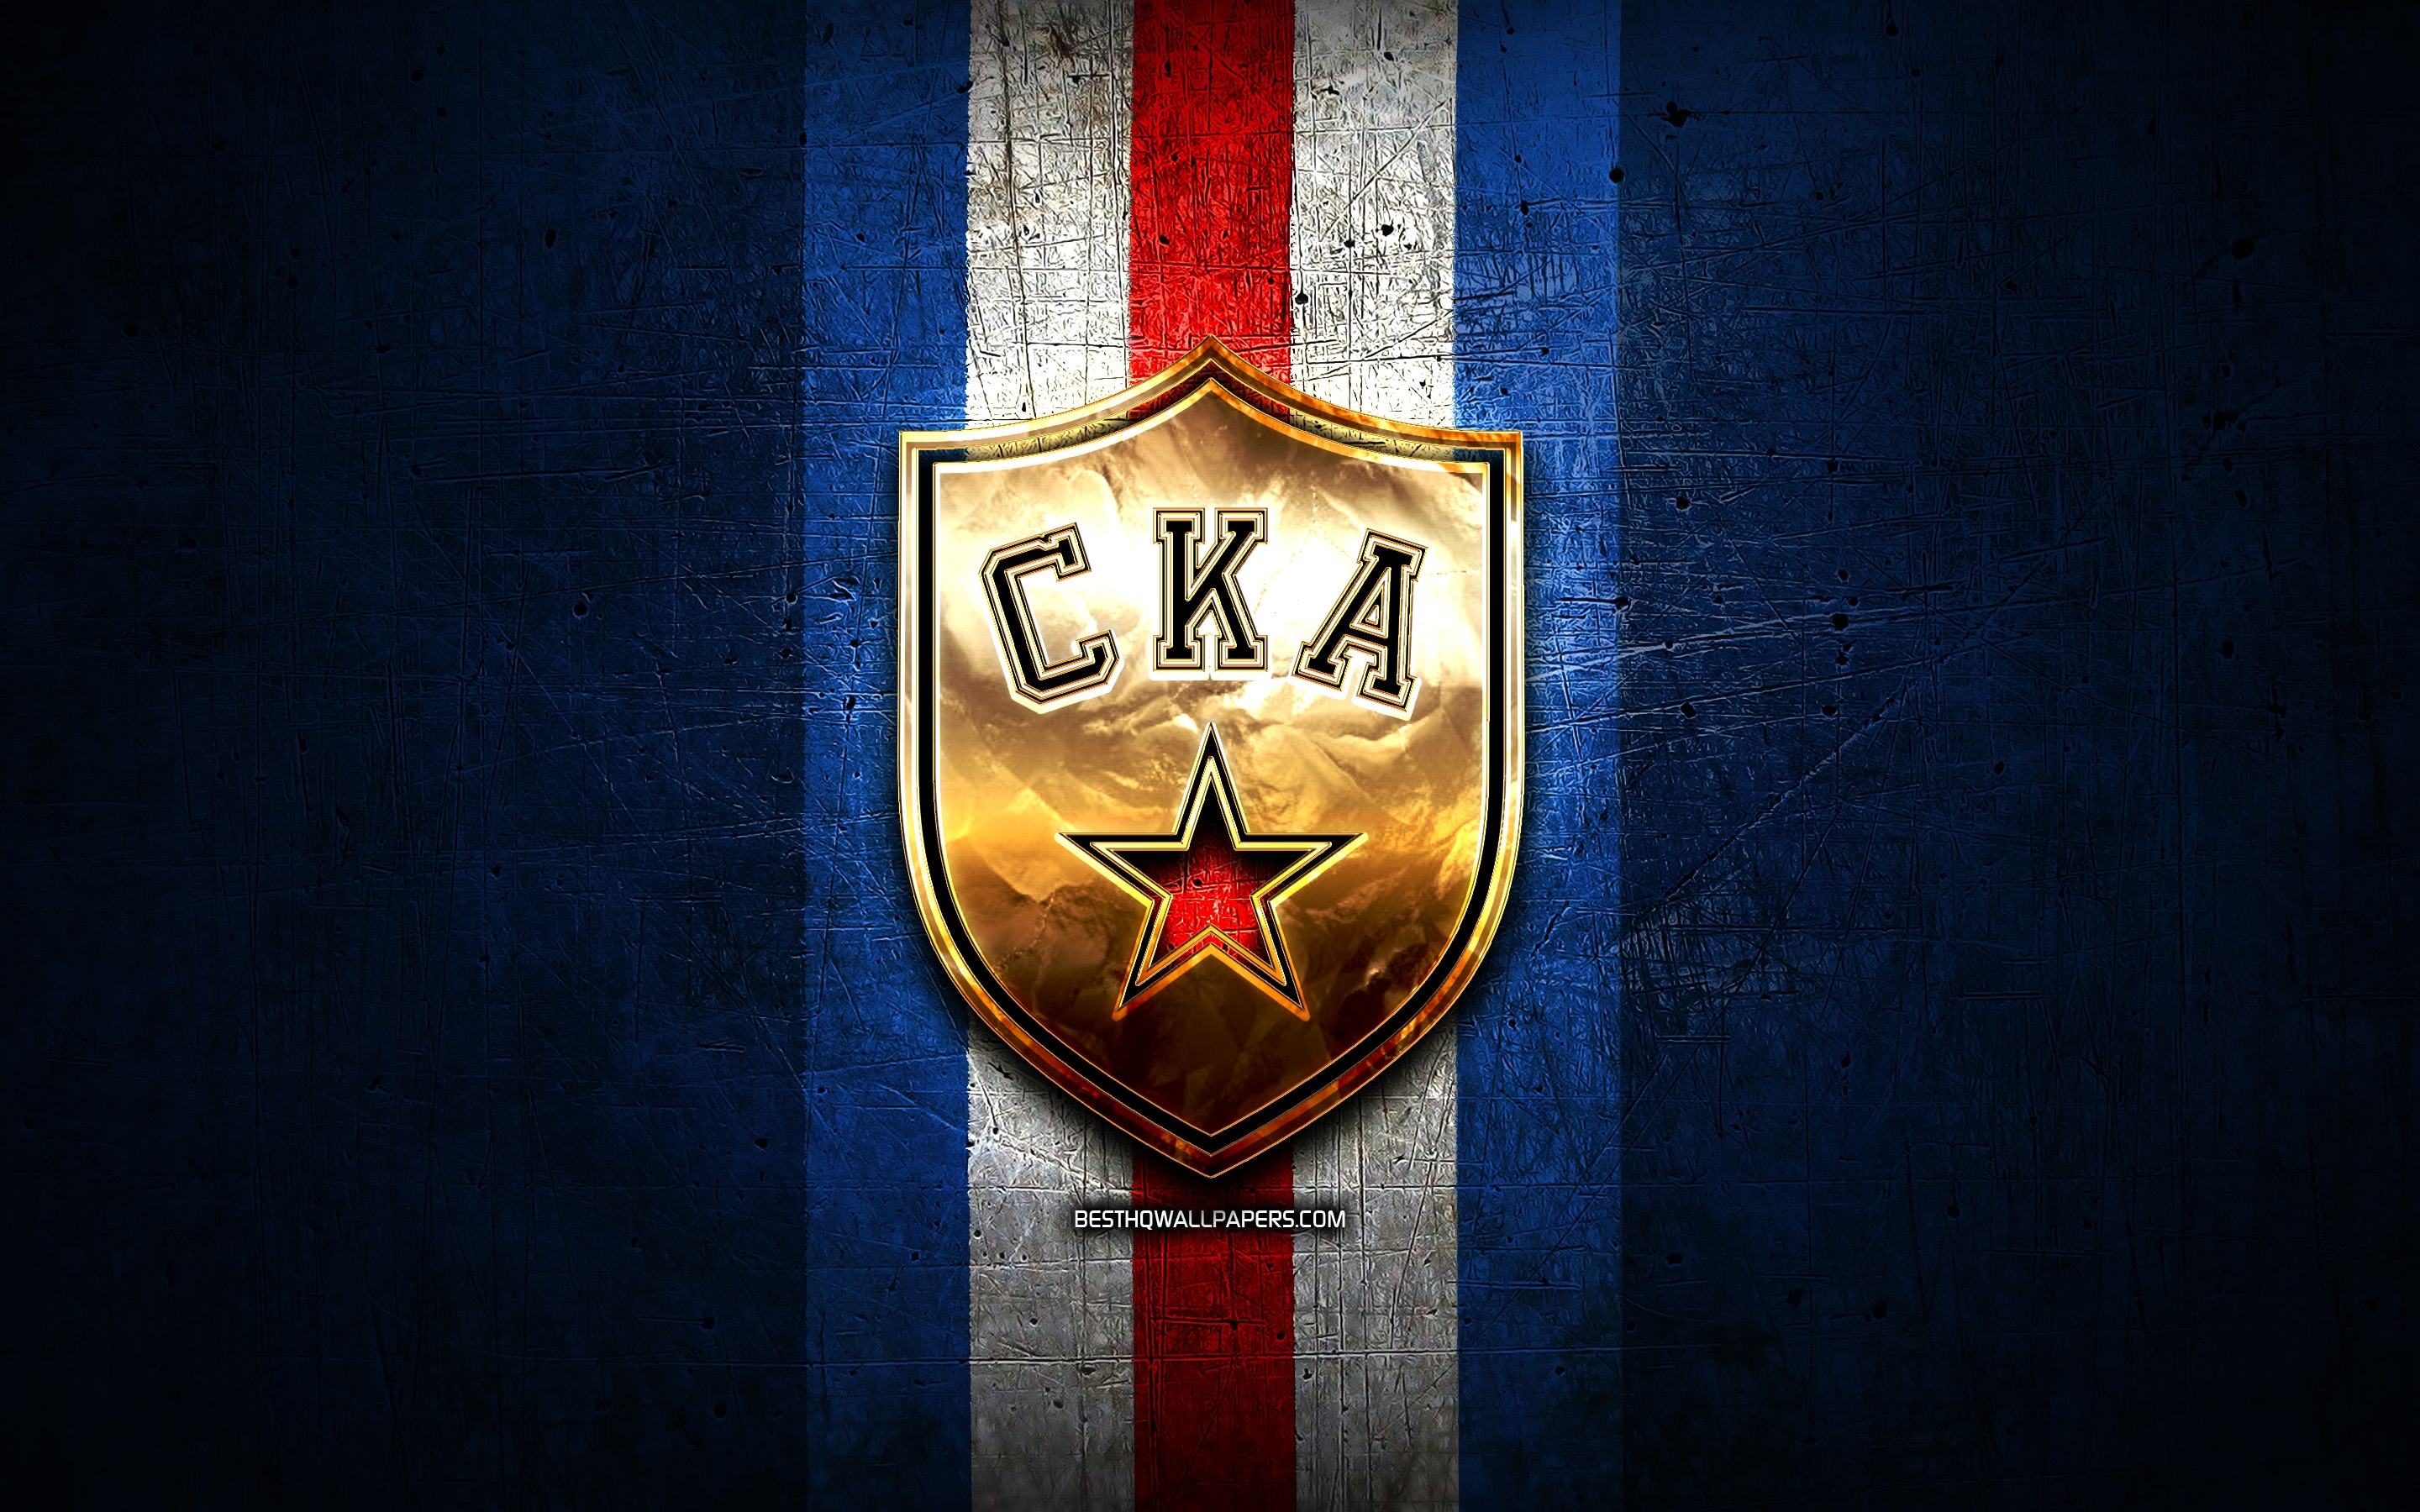 Обои на телефон хк. СКА Санкт-Петербург обои. Эмблема СКА. Хк СКА логотип. Обои на рабочий стол хк СКА.